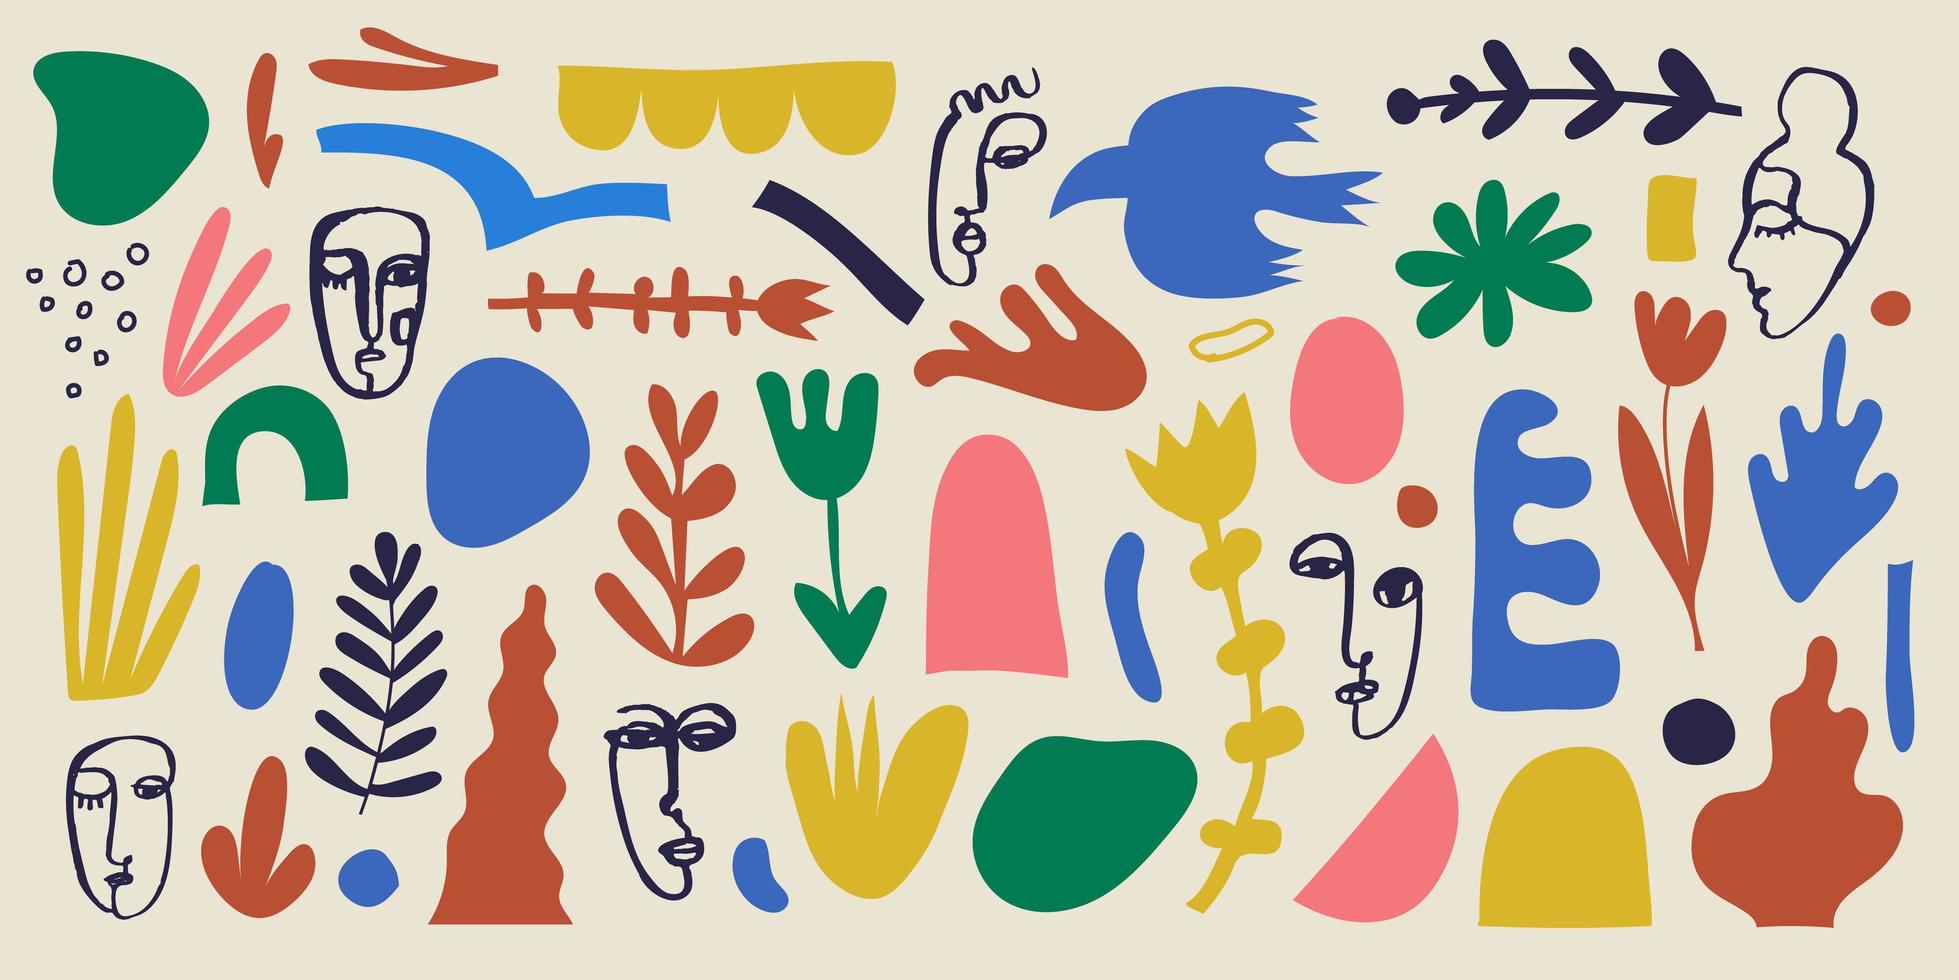 Vektor-Collage-Muster, Hintergrund. handgezeichnete verschiedene Formen und Doodle-Objekte, Blumen, Blätter, menschliche Gesichter. abstrakte zeitgenössische kunst modern vektor